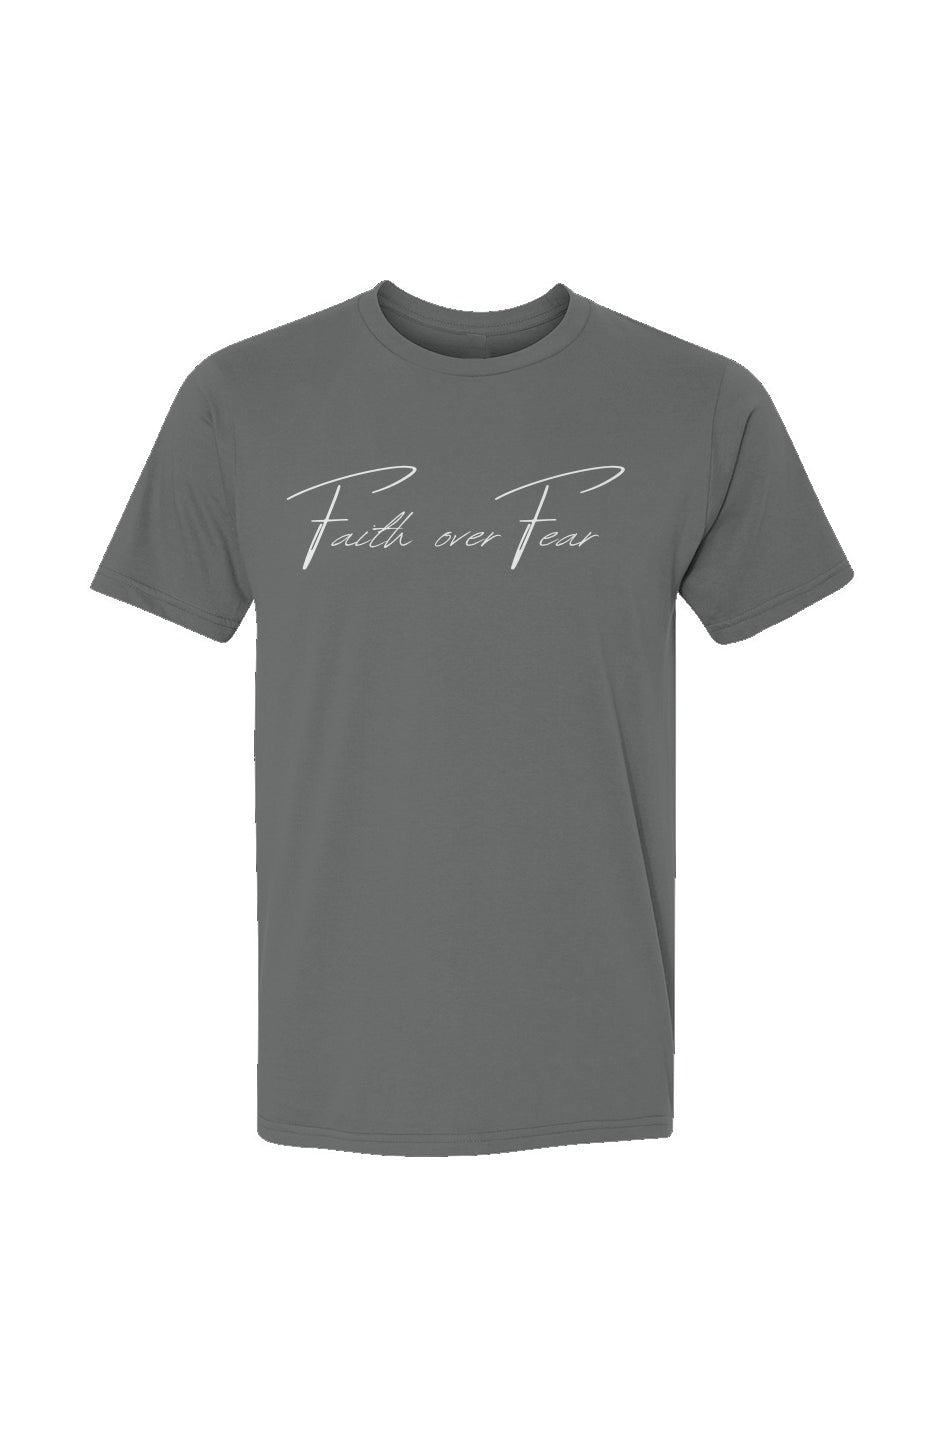 USA-Made Ringspun Unisex T-Shirt Faith over fear